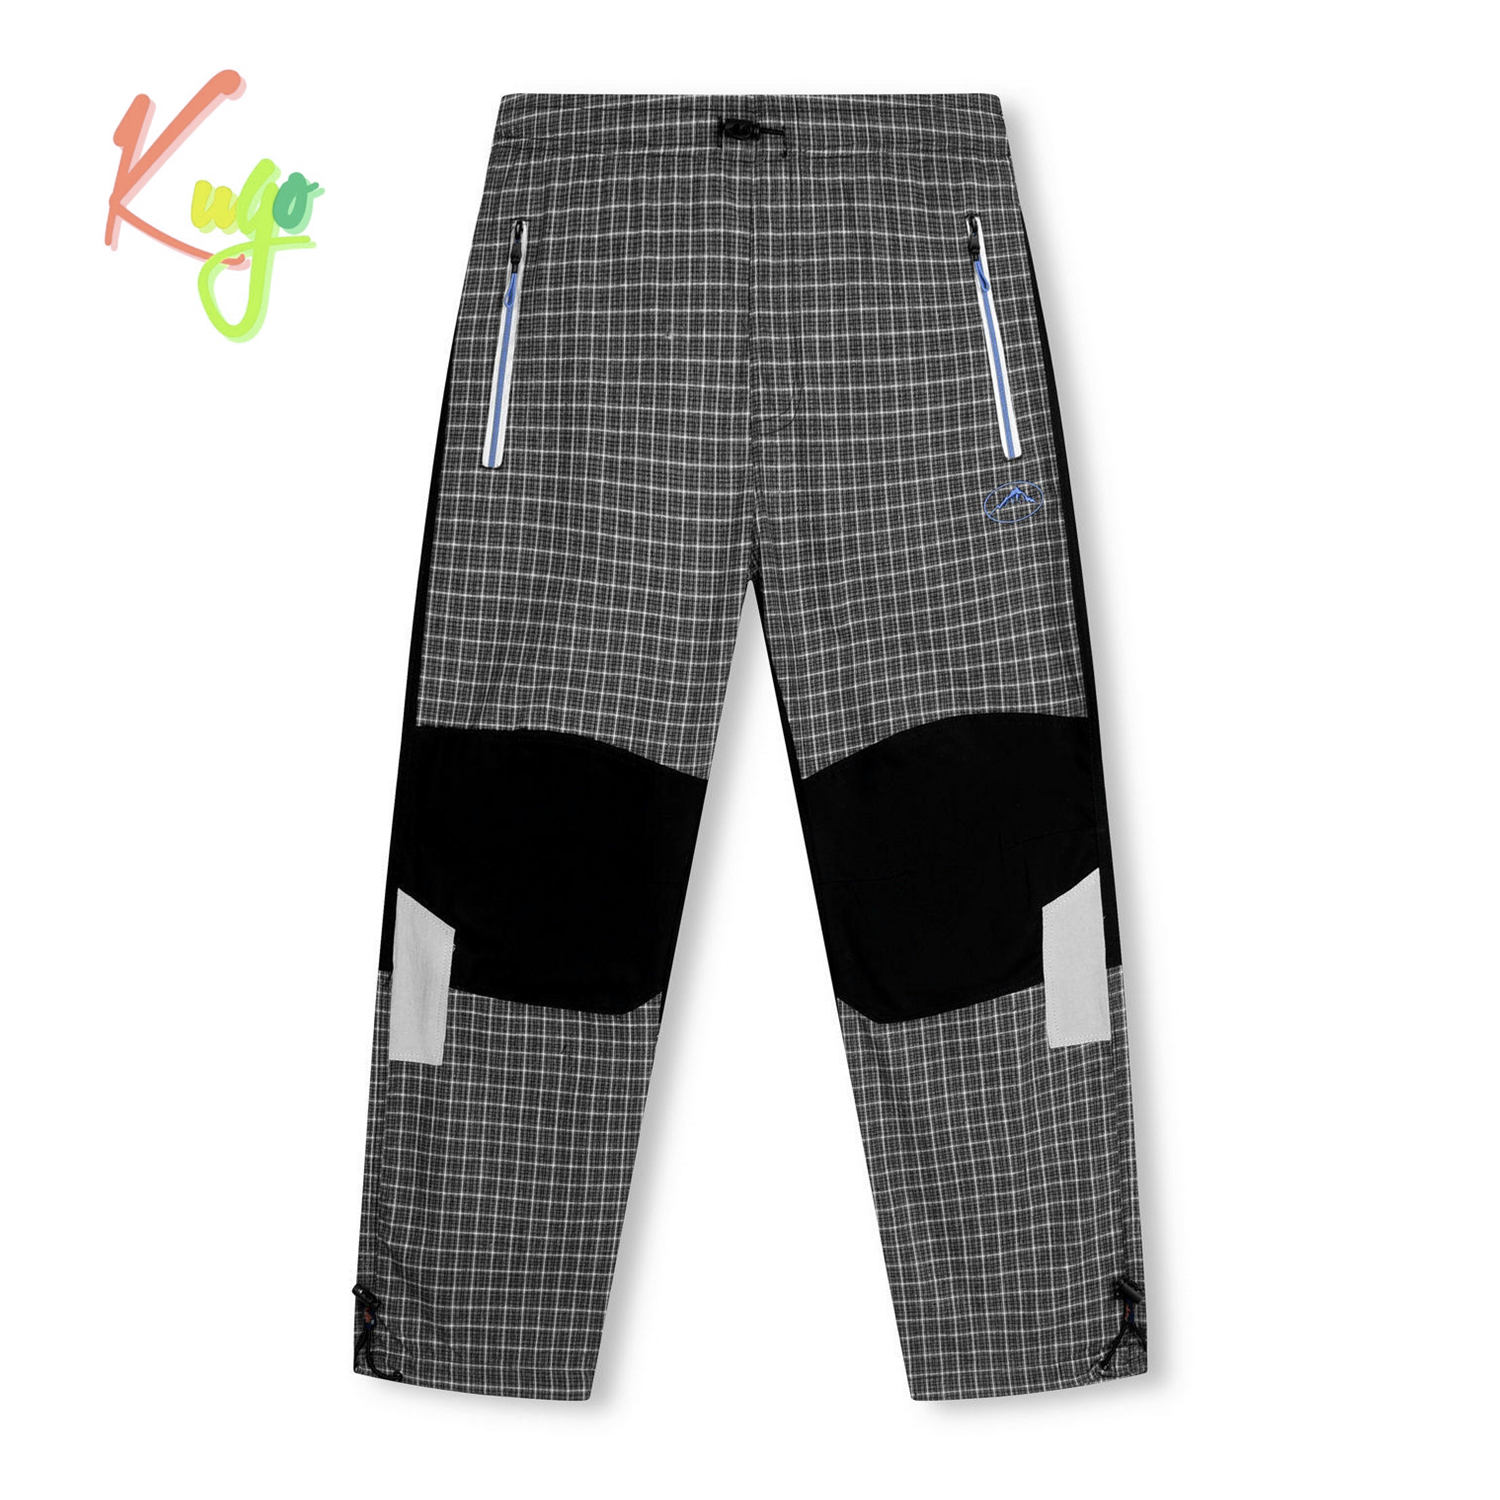 Chlapecké plátěné kalhoty - KUGO FK7607, šedá Barva: Šedá, Velikost: 146